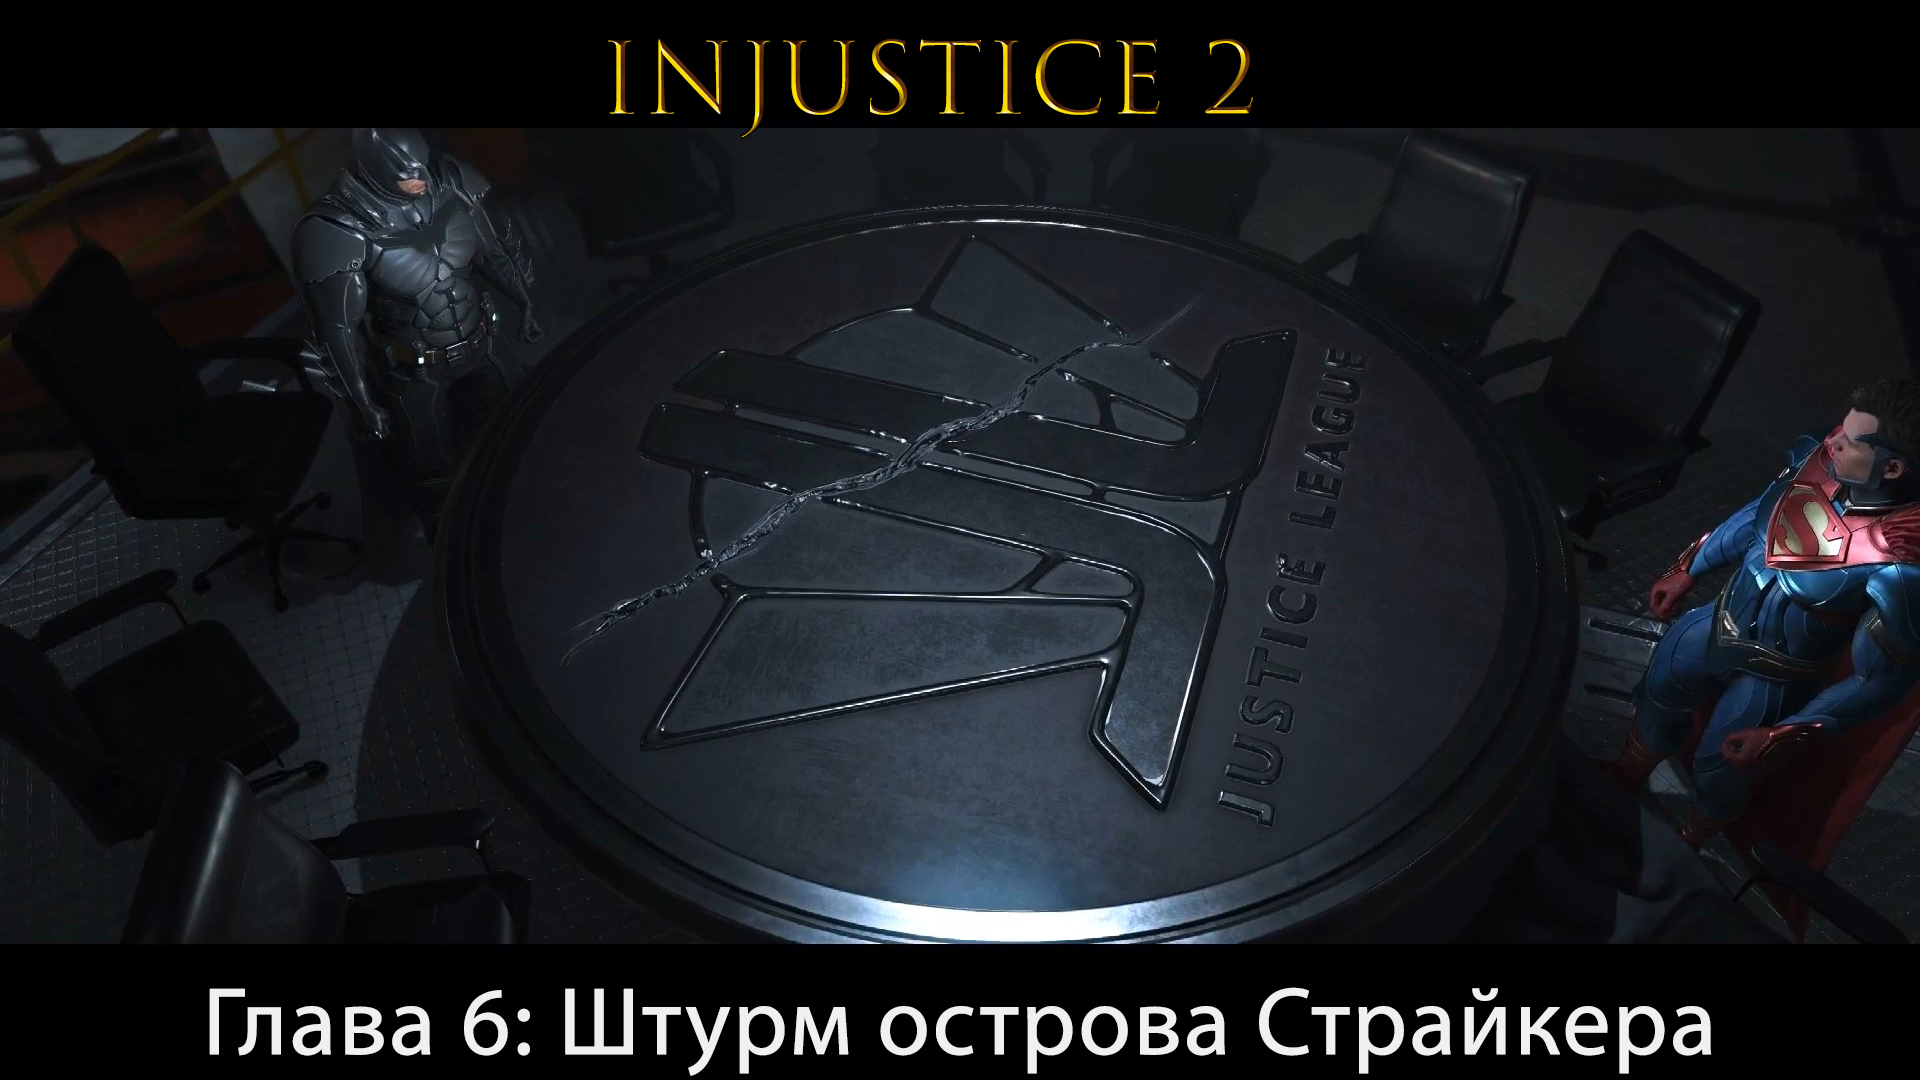 Injustice 2 - Глава 6: Штурм острова Страйкера - Синий Жук и Файршторм (Сюжет) (Gameplay)